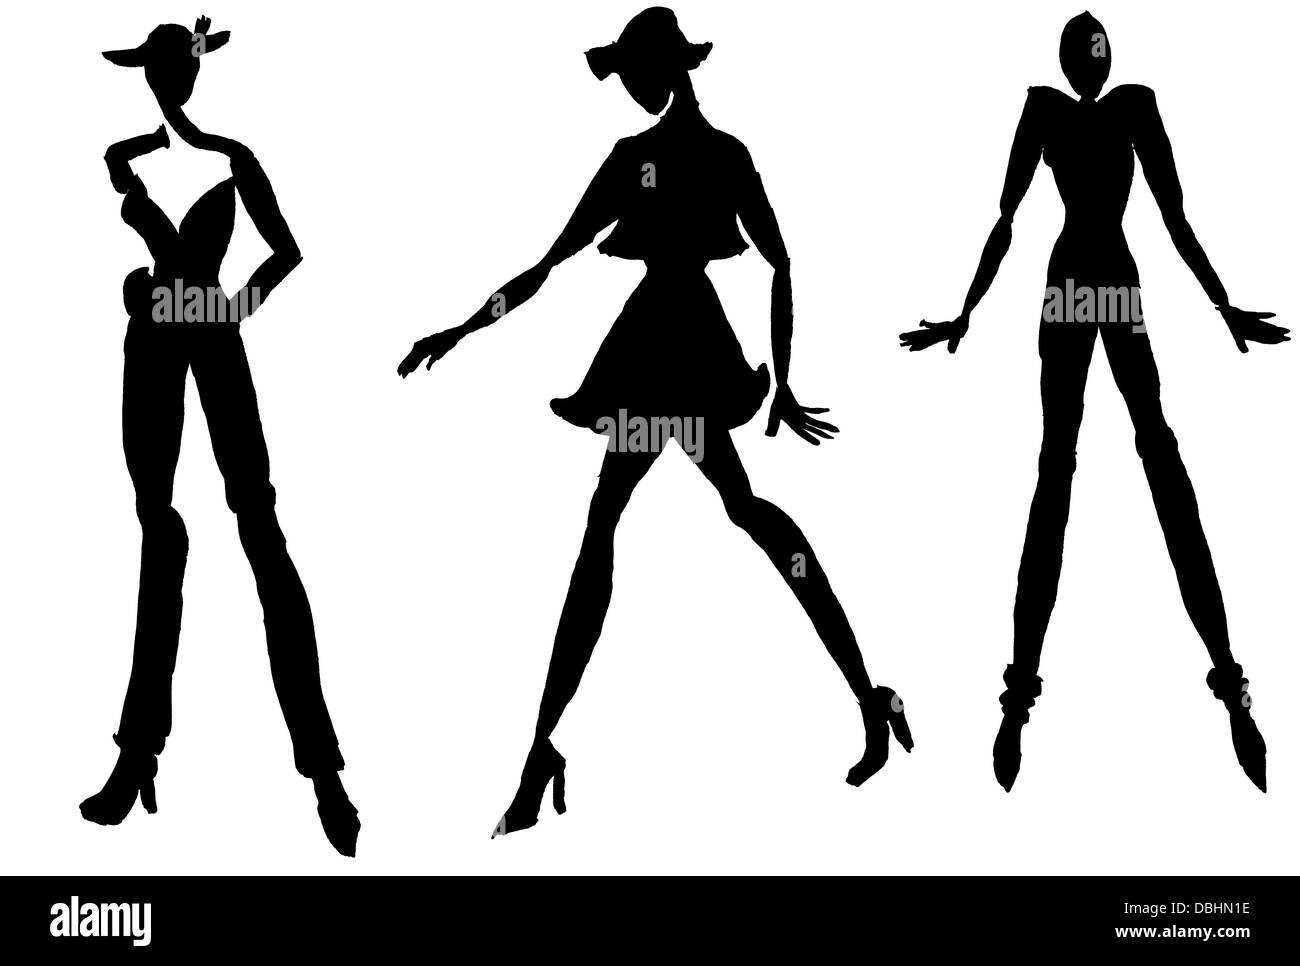 Croquis du modèle de mode - silhouettes de femmes en mouvement Banque D'Images